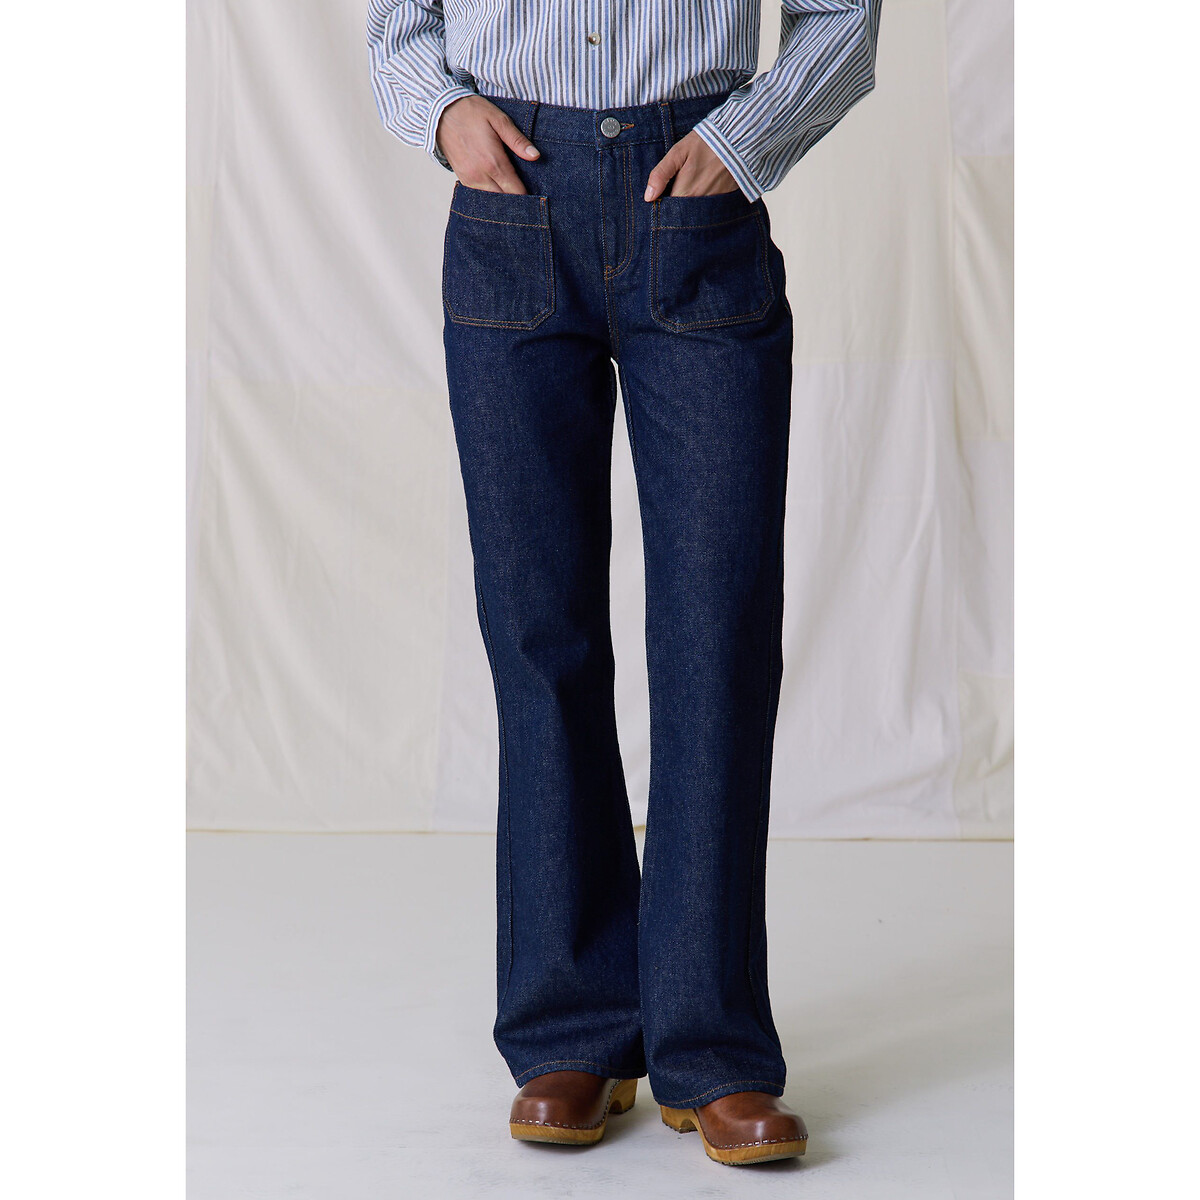 Джинсы прямые с накладными карманами спереди PERFECT PLN1 36 (FR) - 42 (RUS) синий джинсы прямые с эффектом делаве 78 36 fr 42 rus синий